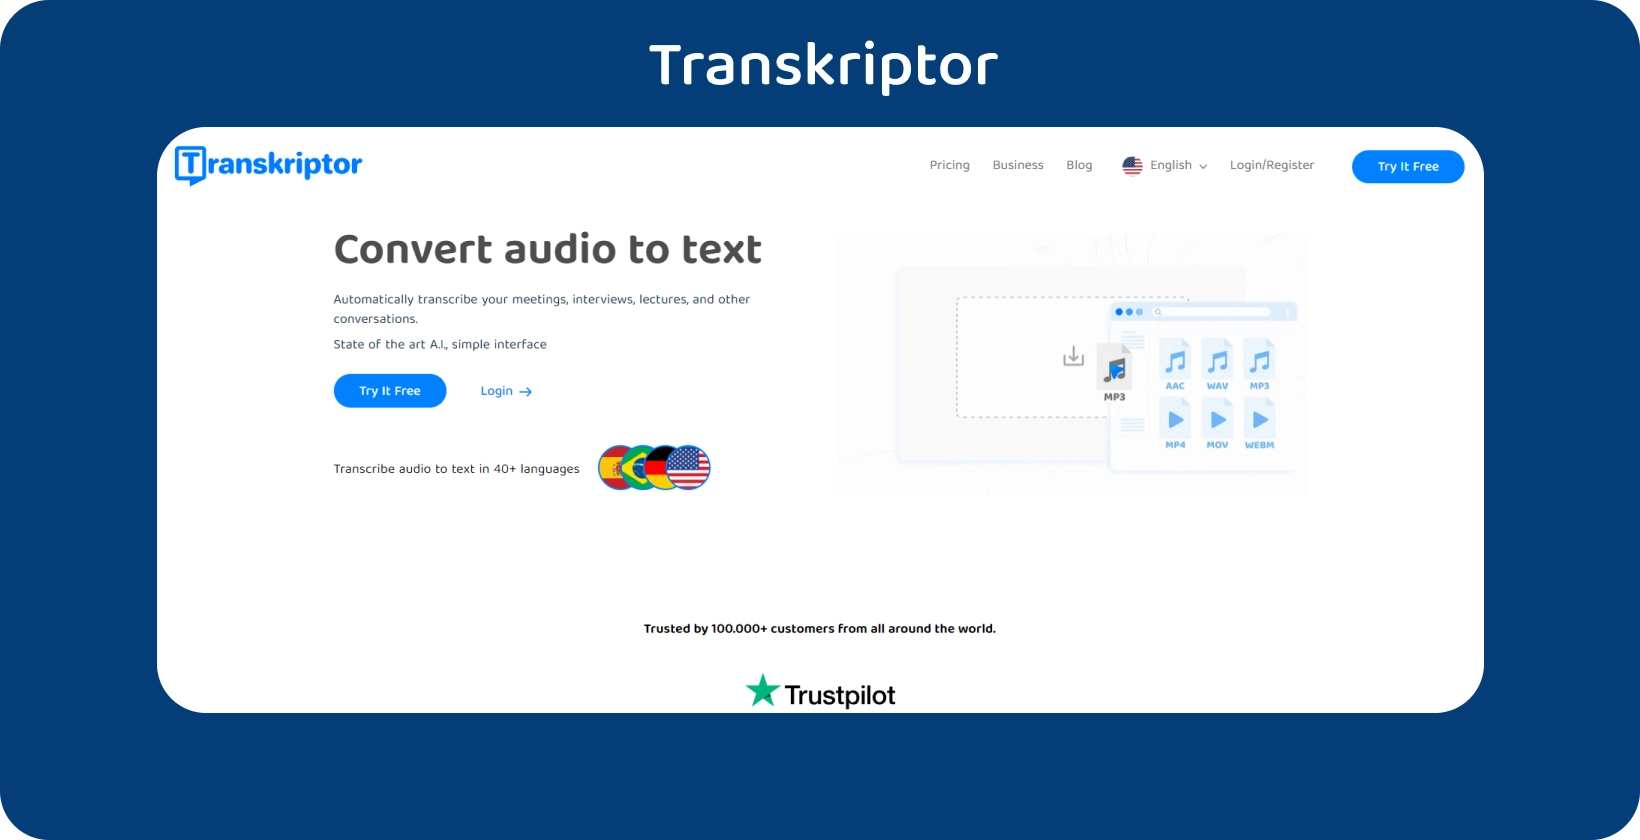 Transkriptor kotisivu, jolla on selkeä toimintakehotus ja joka tarjoaa äänen tekstiksi transkriptiopalveluita.